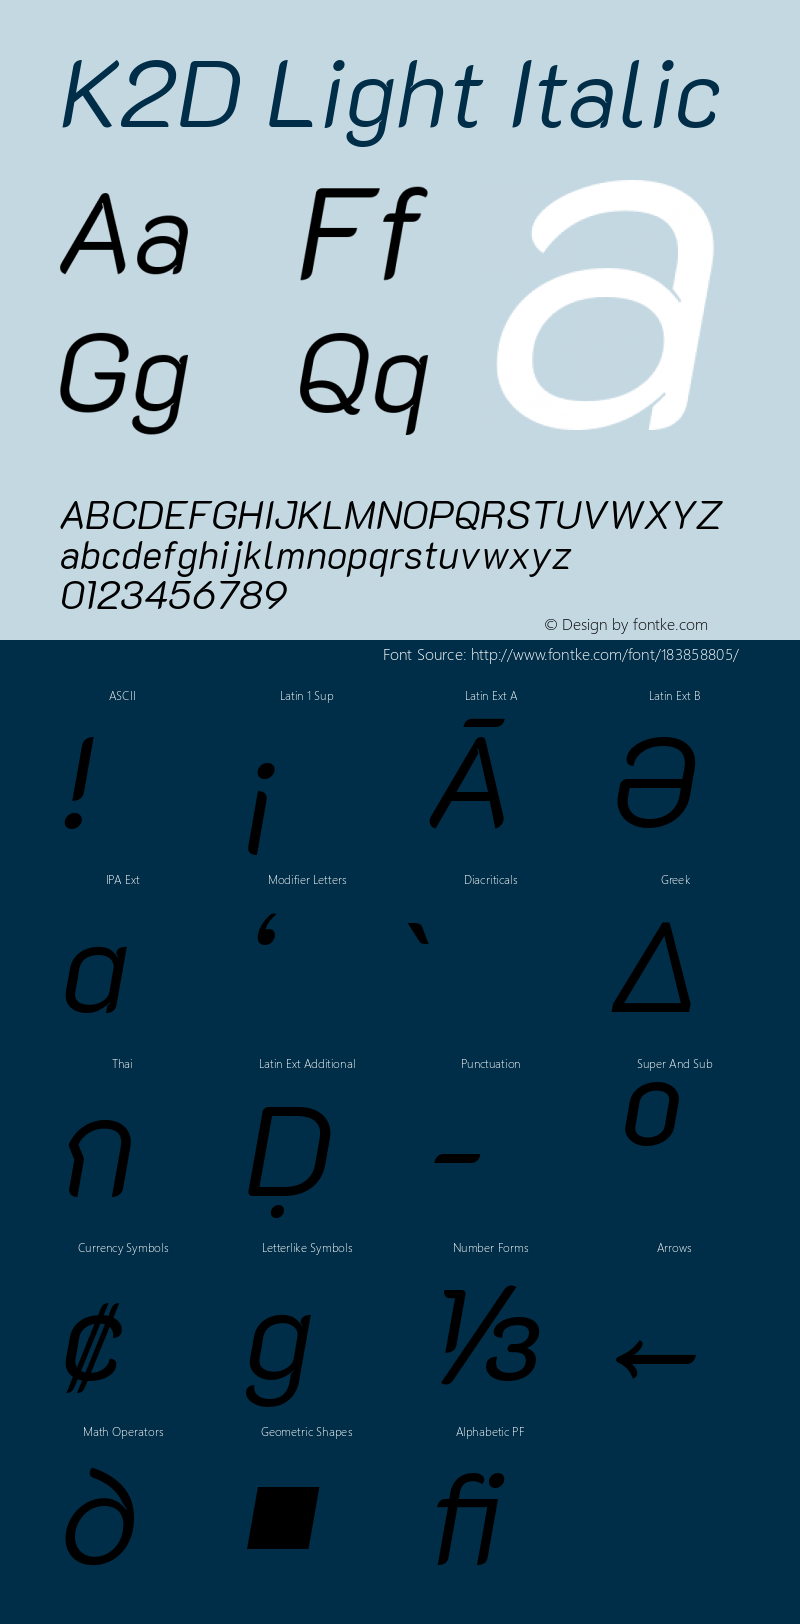 K2D Light Italic Version 1.000; ttfautohint (v1.6)图片样张